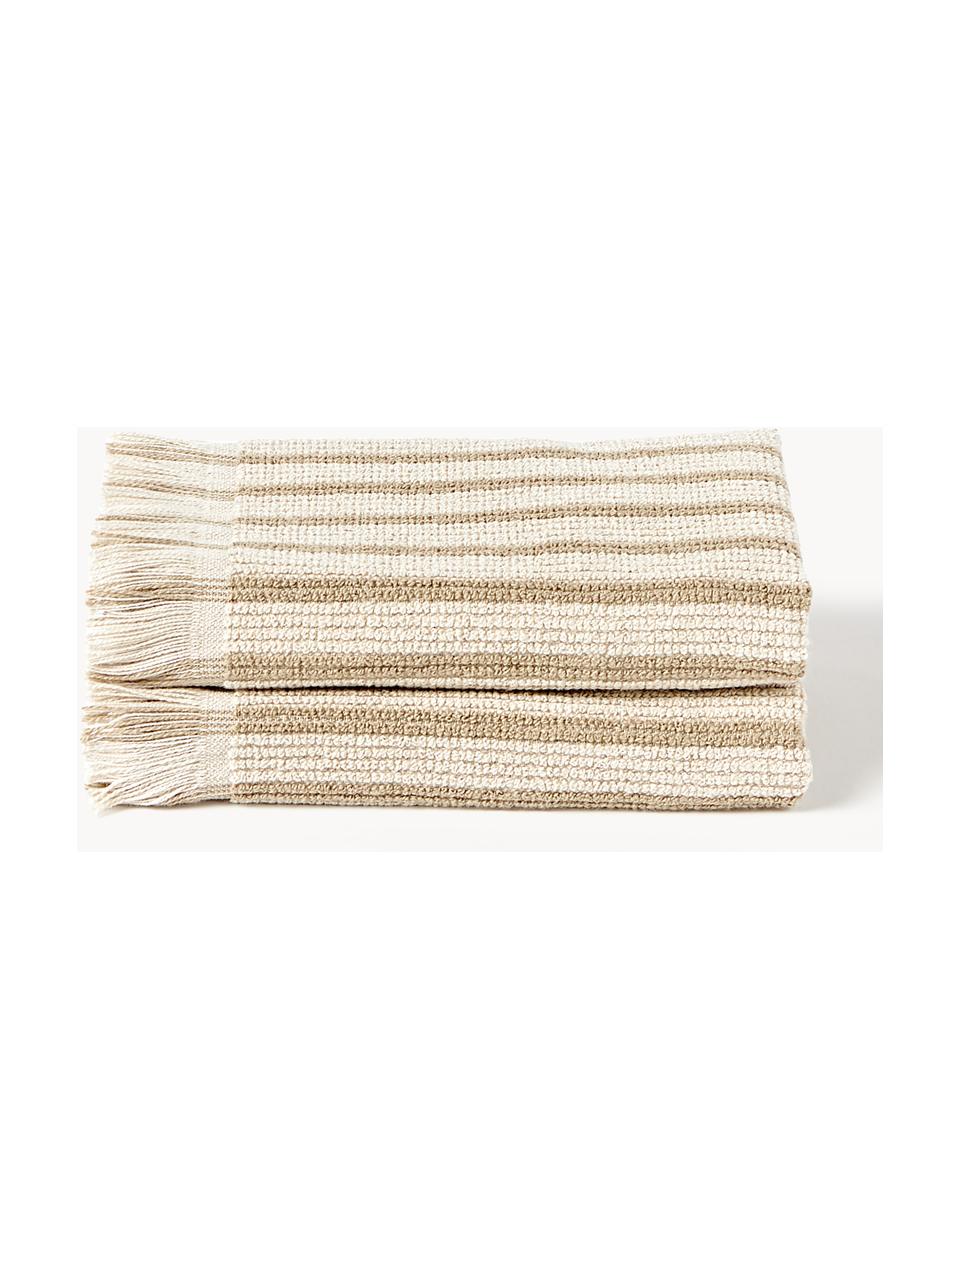 Handdoek Irma in verschillende formaten, Beige, Handdoek, B 50 x L 100 cm, 2 stuks